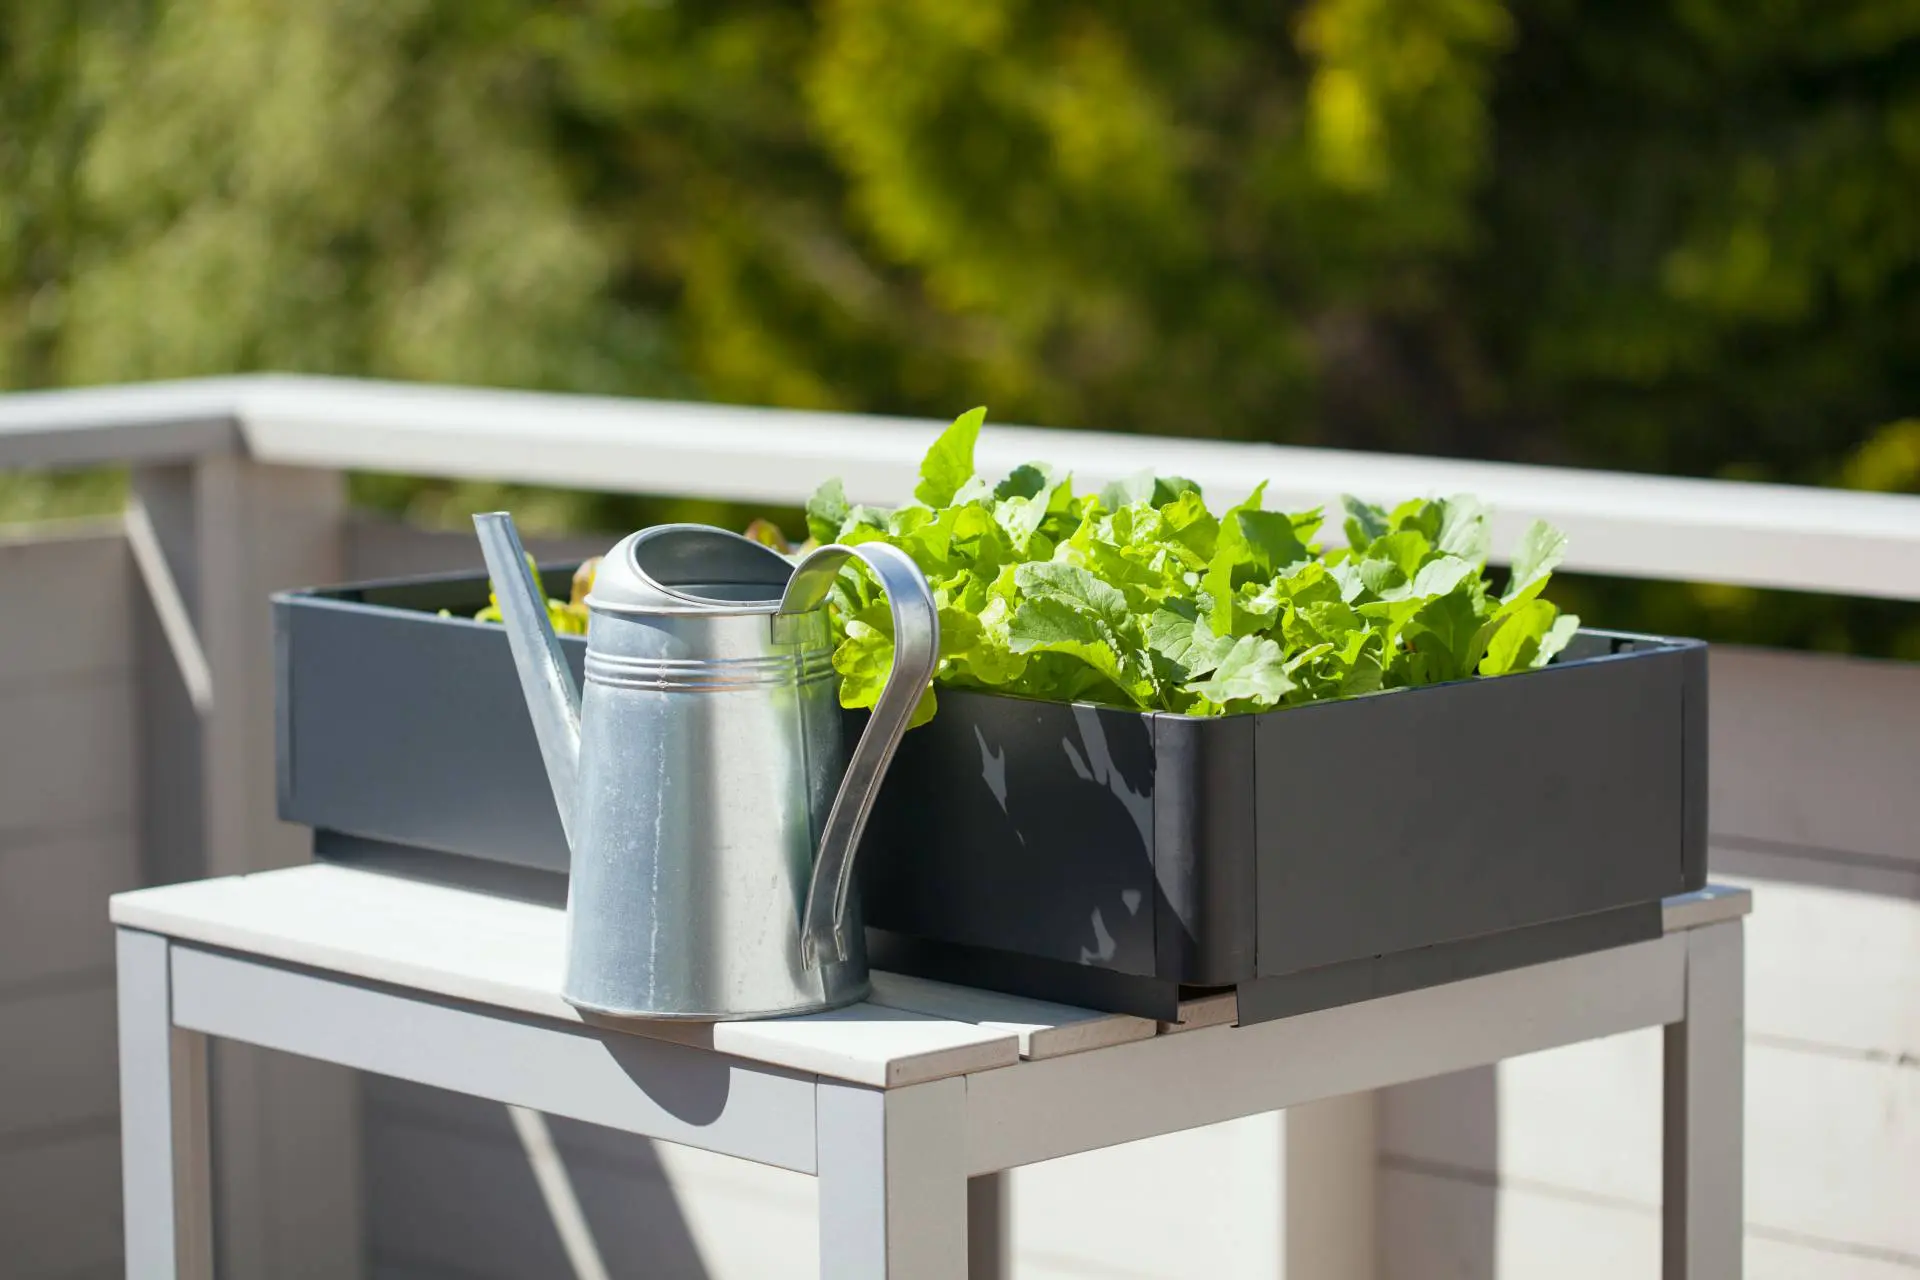 Anbau von Rettich und Salat im Container auf dem Balkon